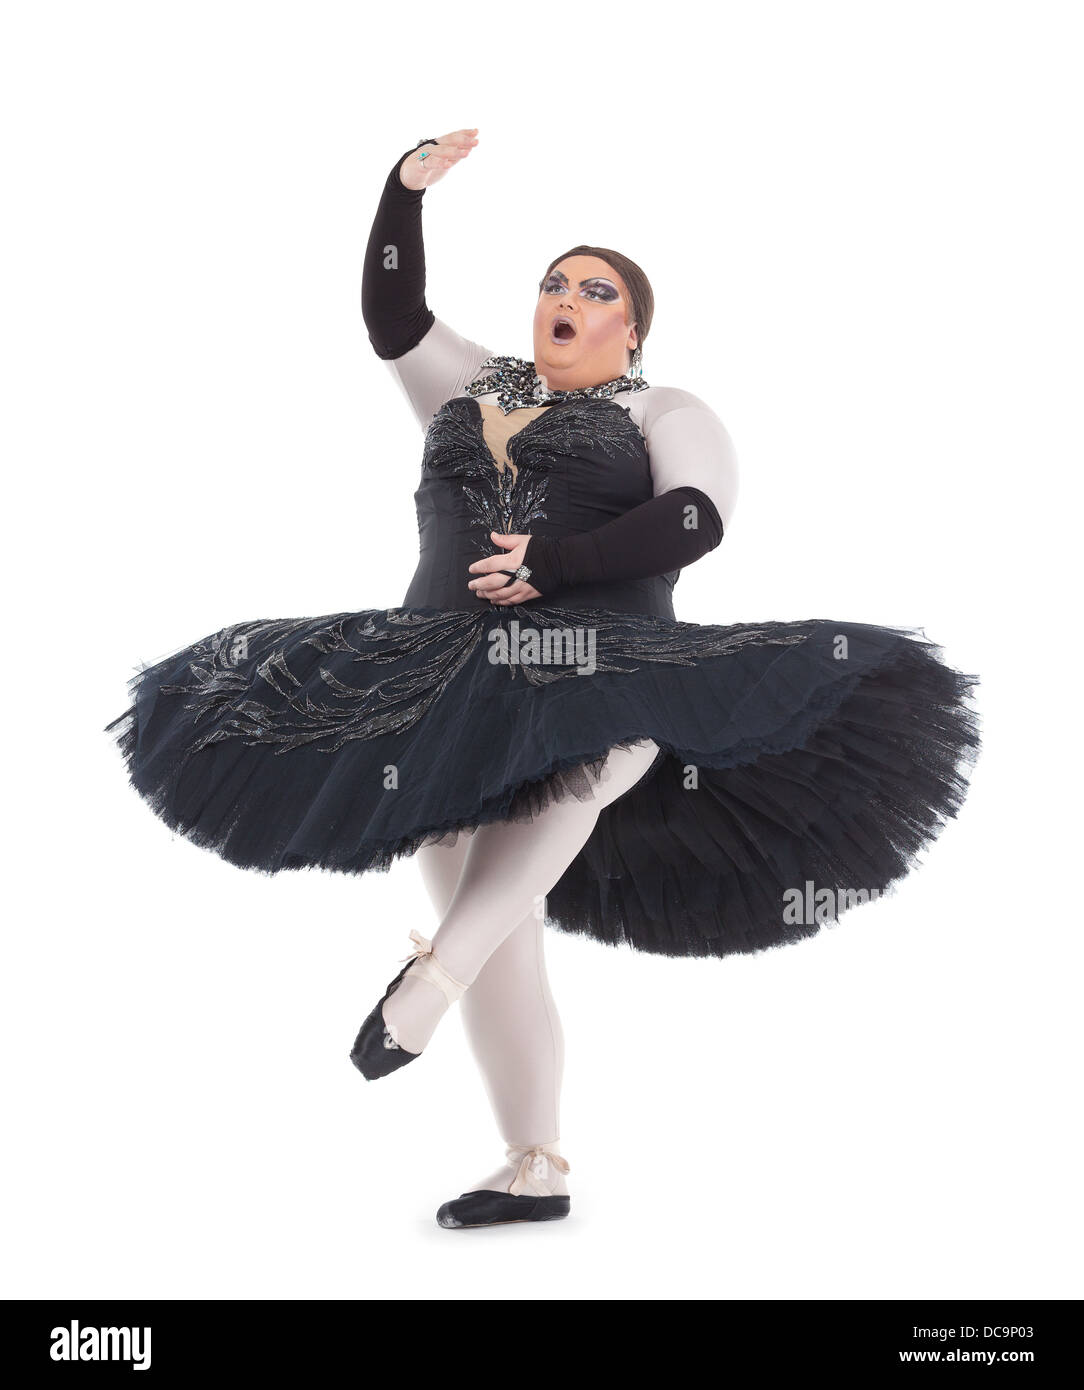 Übergewicht Drag Queen tanzen in einem Tutu flink balancieren auf Zehenspitzen mit seinen Fuß in eine lustige Karikatur eines weiblichen Balletts Stockfoto